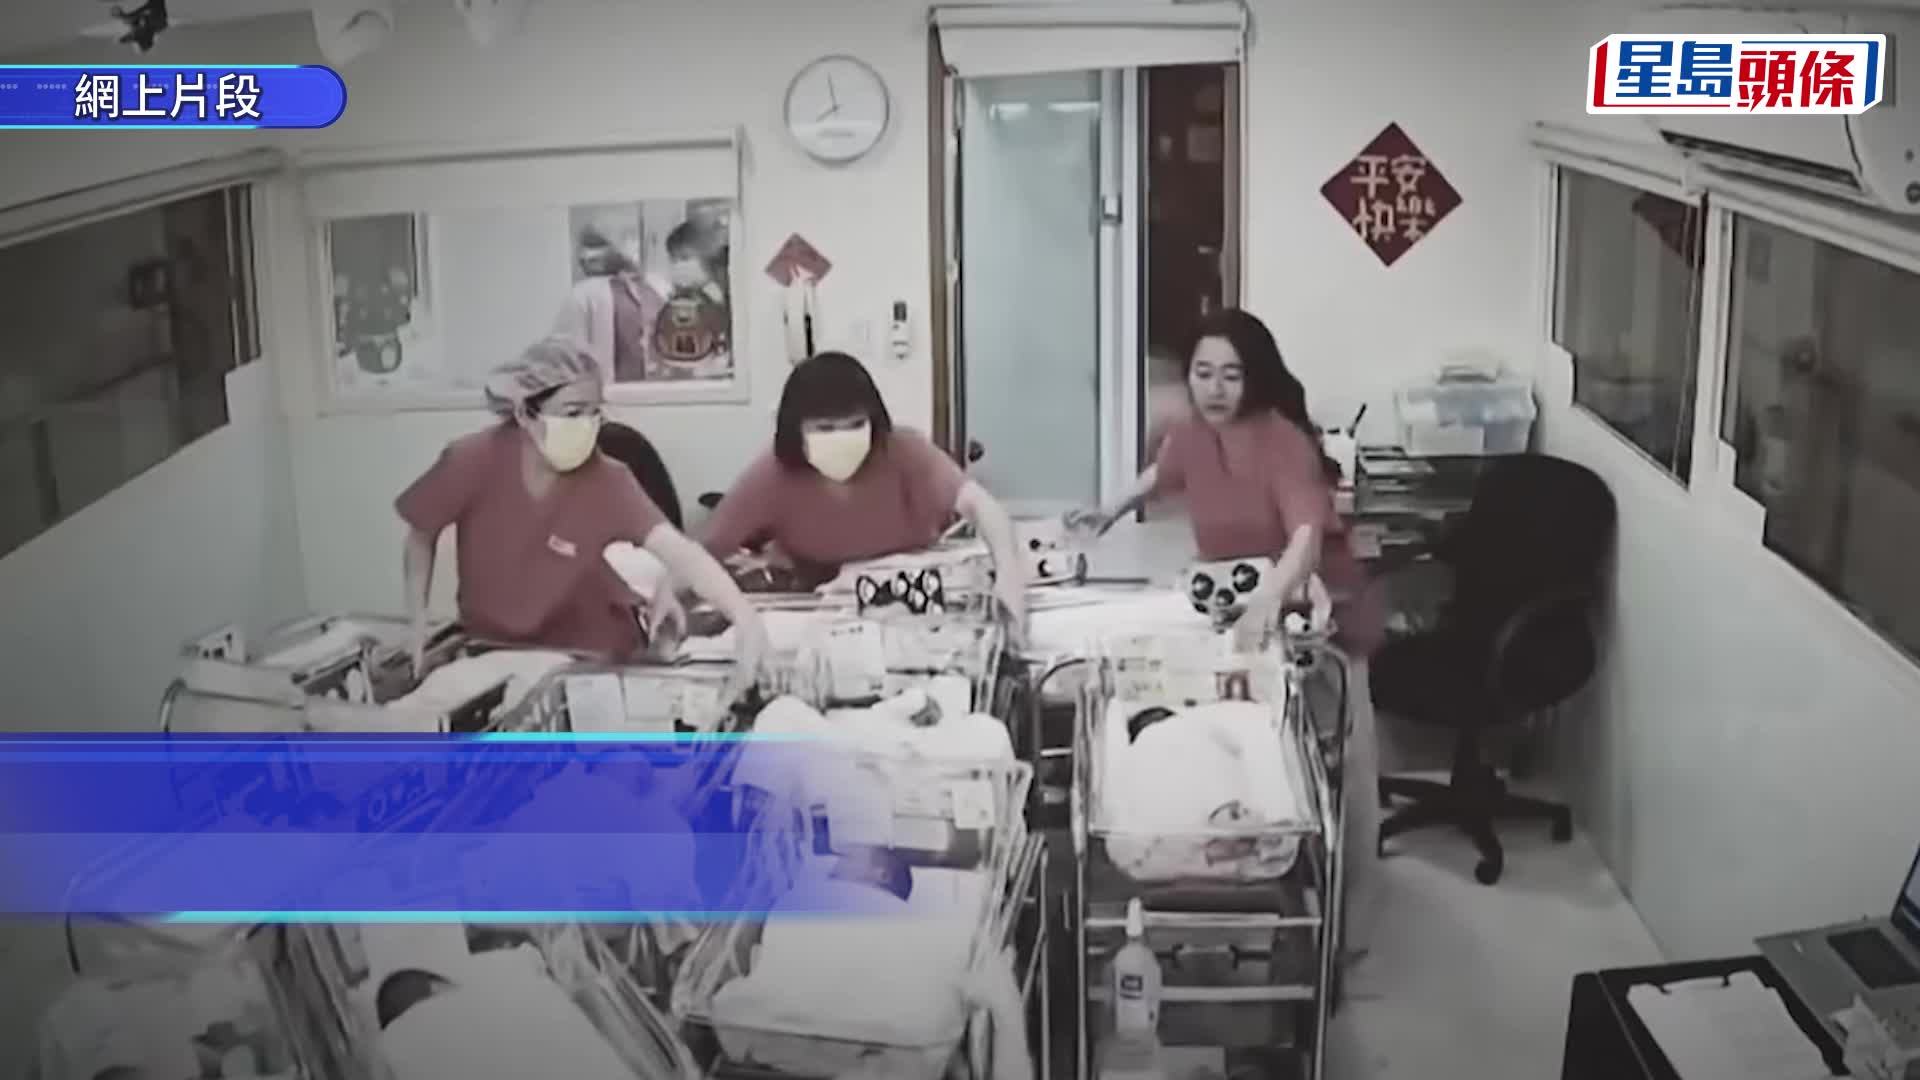 台灣花蓮地震︱護士捨身「死攬」新生嬰獲狂讚  主播企唔穩照報新聞登CNN︱有片